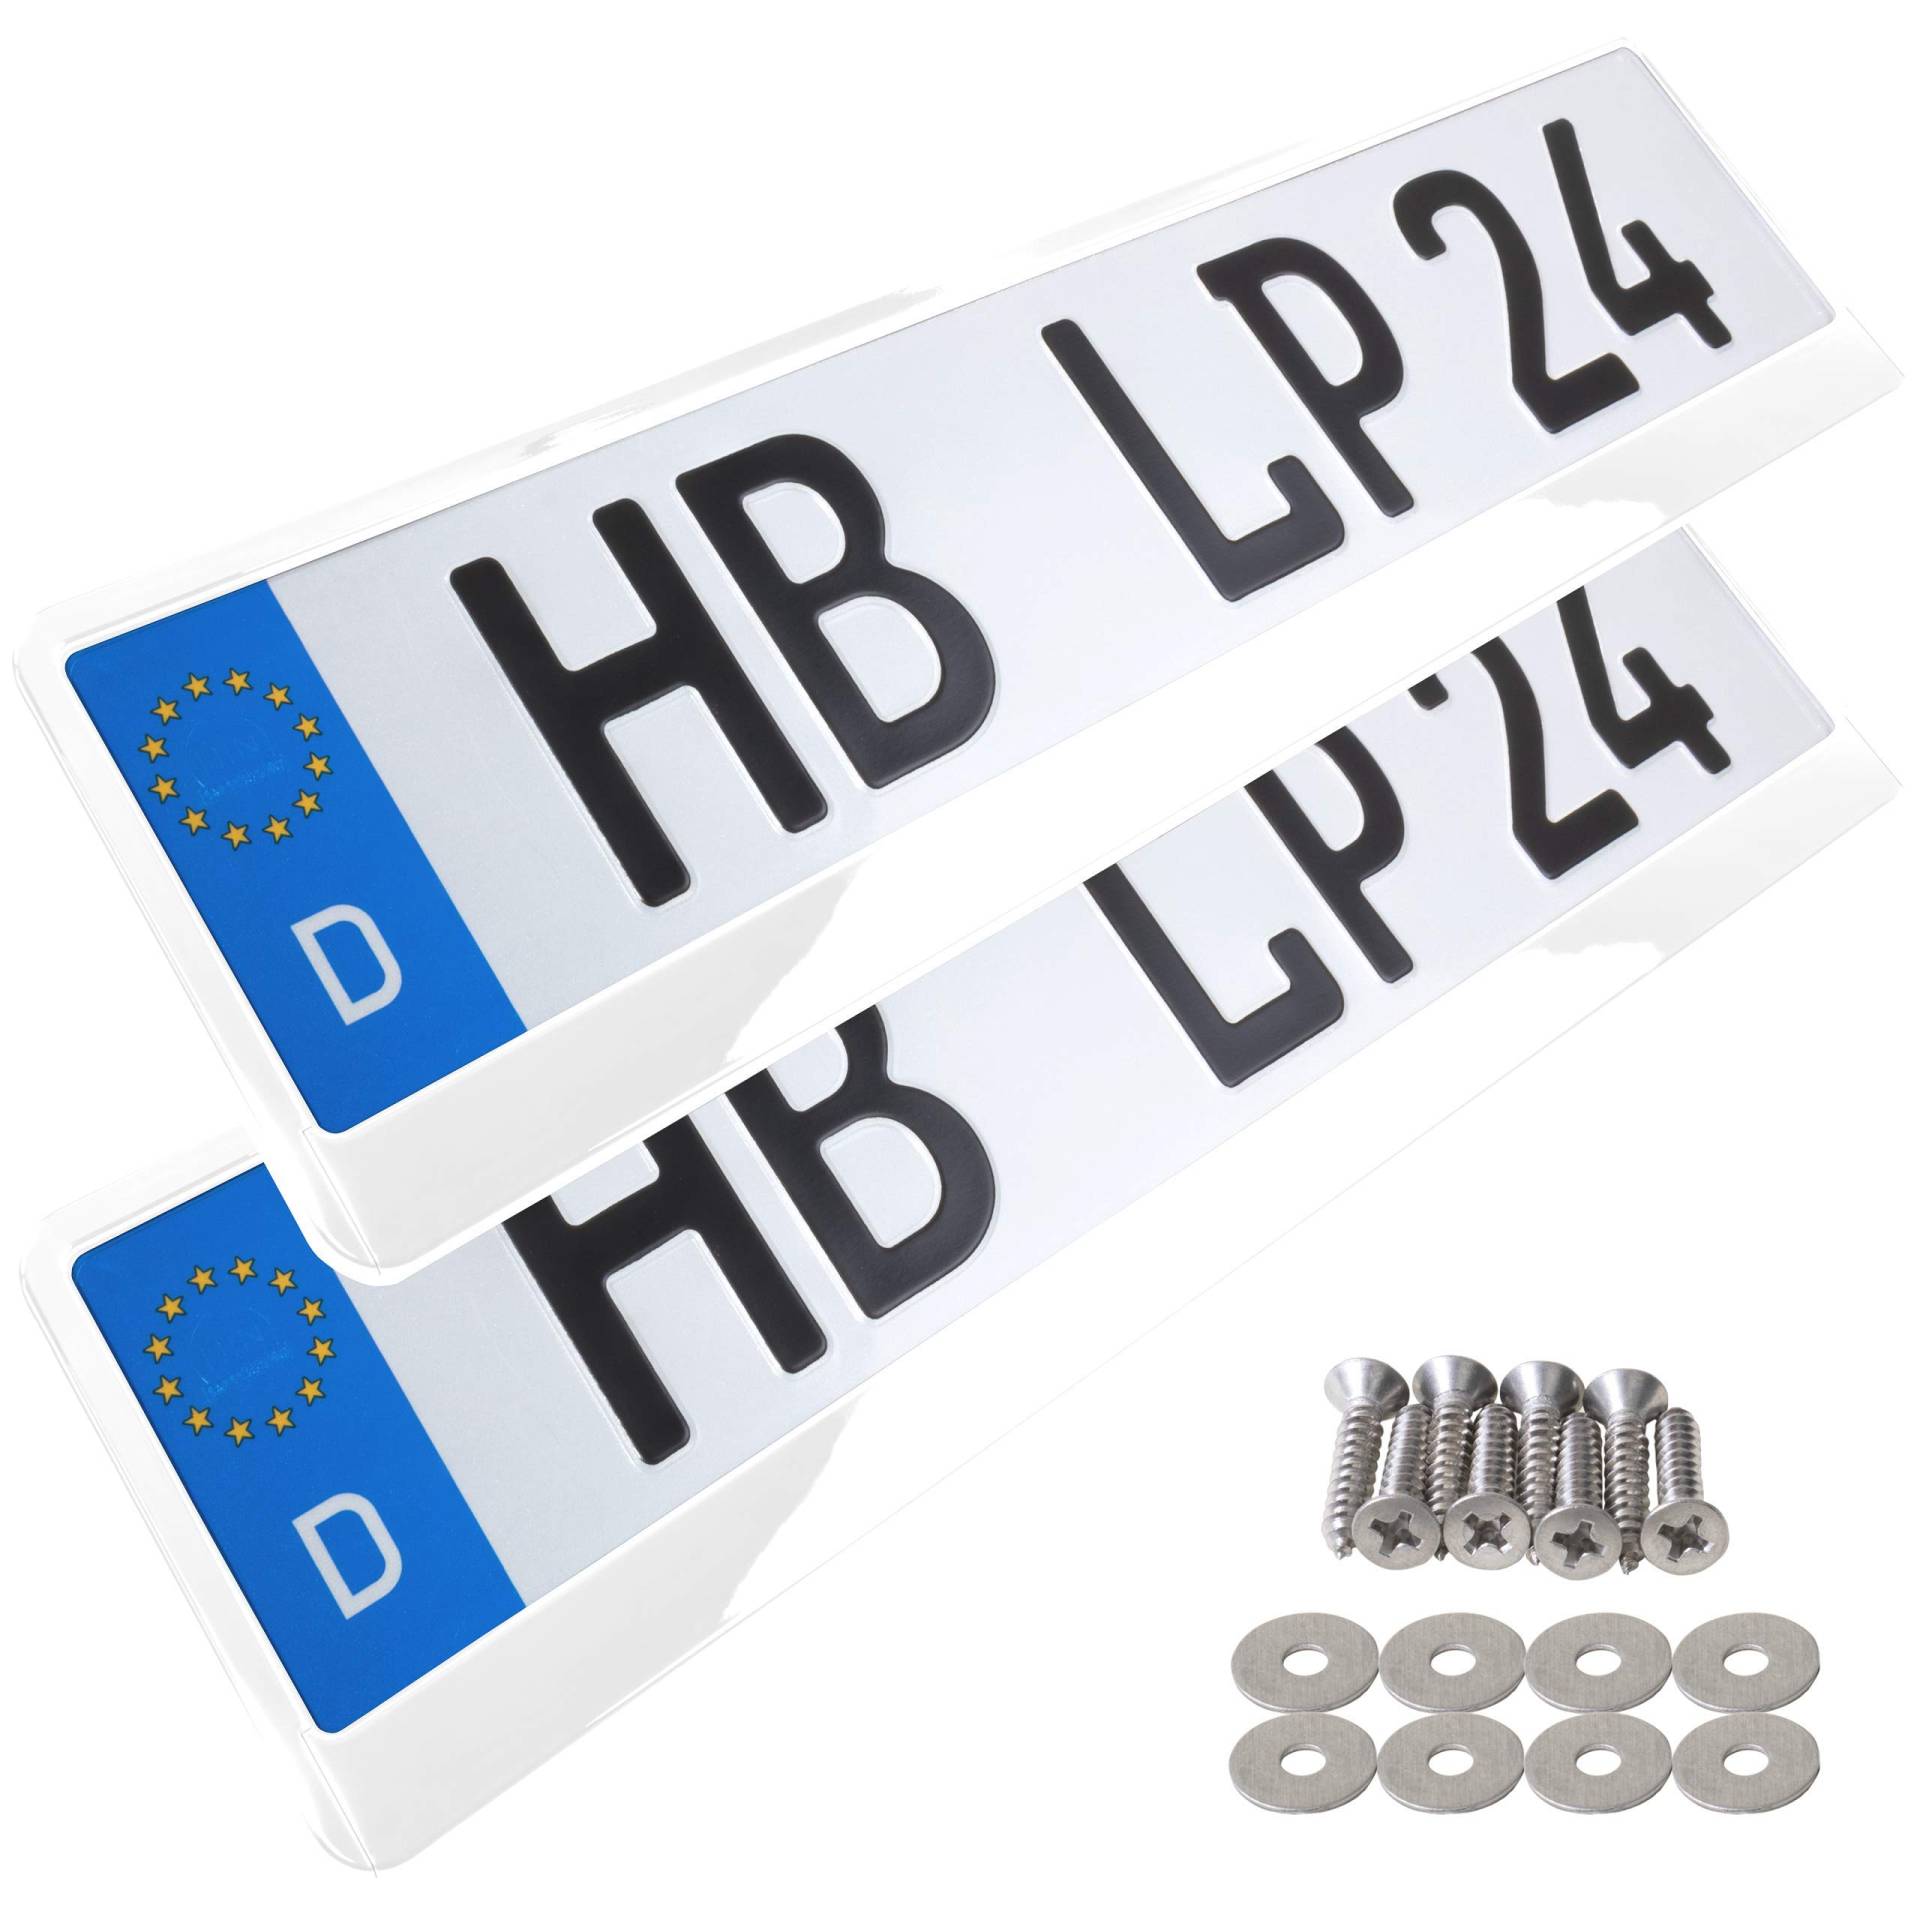 A158 Kennzeichenhalter 2 Stück Auto Nummernschildhalter weiß hochglanz Kennzeichenverstärker Kennzeichenhalterung Nummernschildhalterung Verstärker Halter für Kennzeichen Nummernschild edel glänzend von L & P Car Design